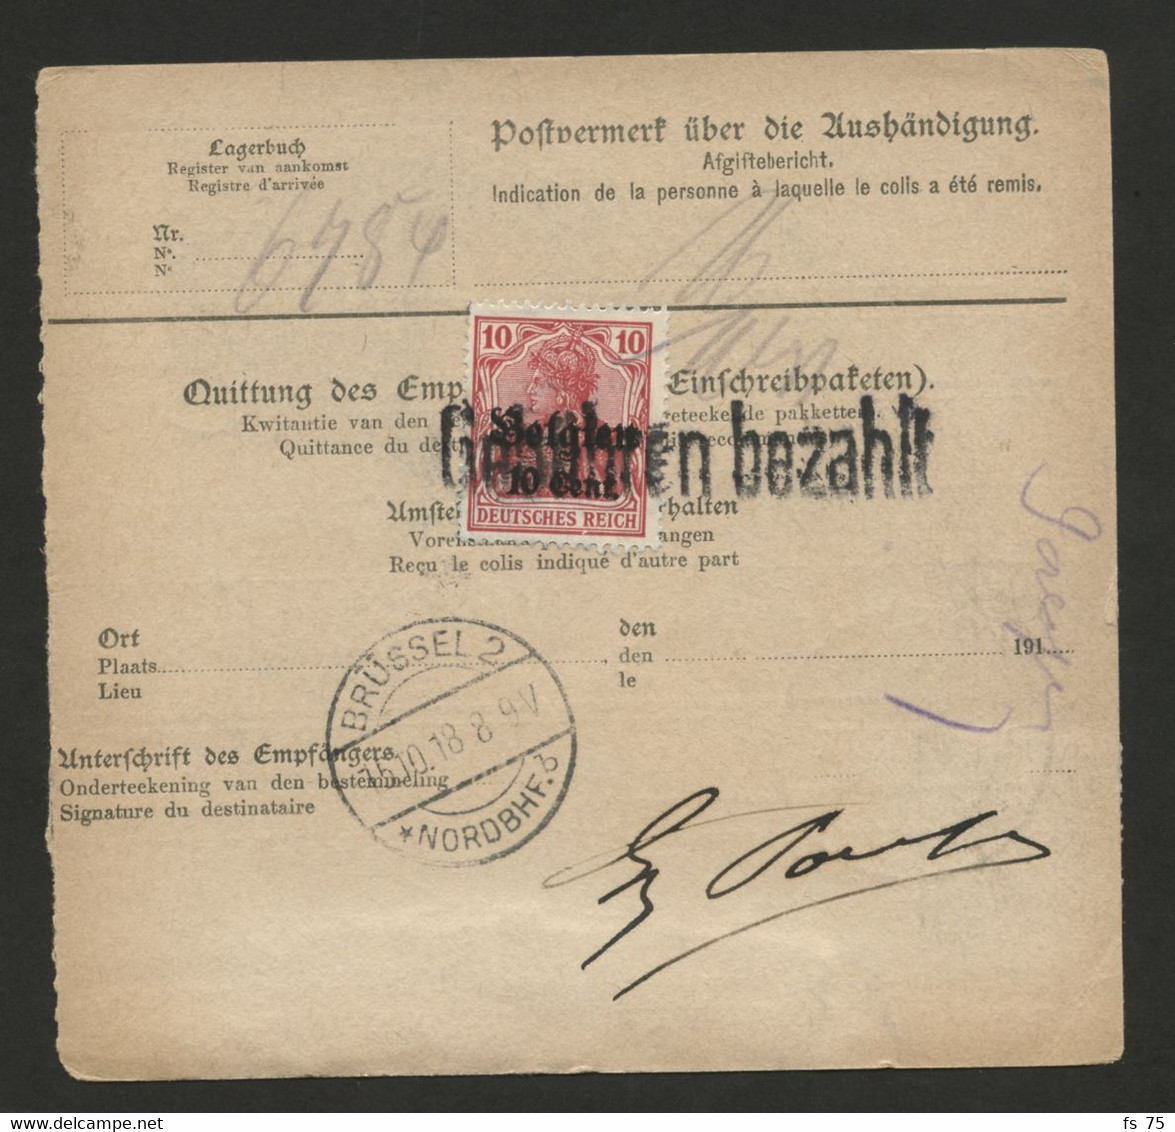 BELGIQUE - COB OC 21 LEOPOLDSBURG + AU VERSO OC 14 GRIFFE GEBUHREN BEZAHLT SUR BULLETIN DE COLIS POSTAL, 1918 - Deutsche Armee